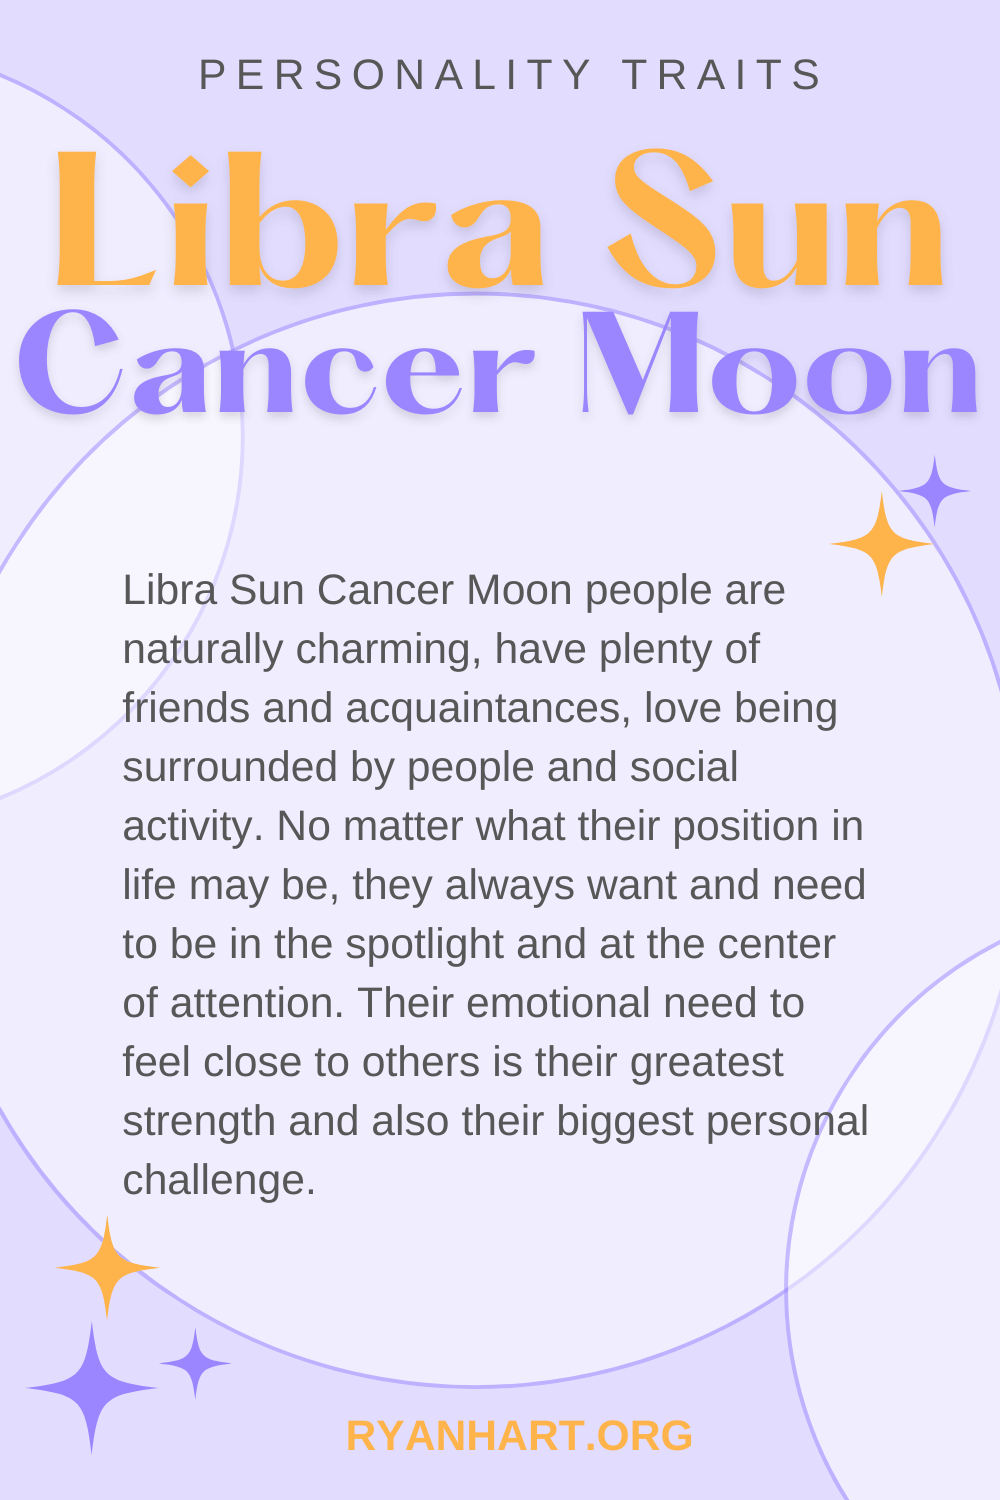 Libra Sun Cancer Moon Description